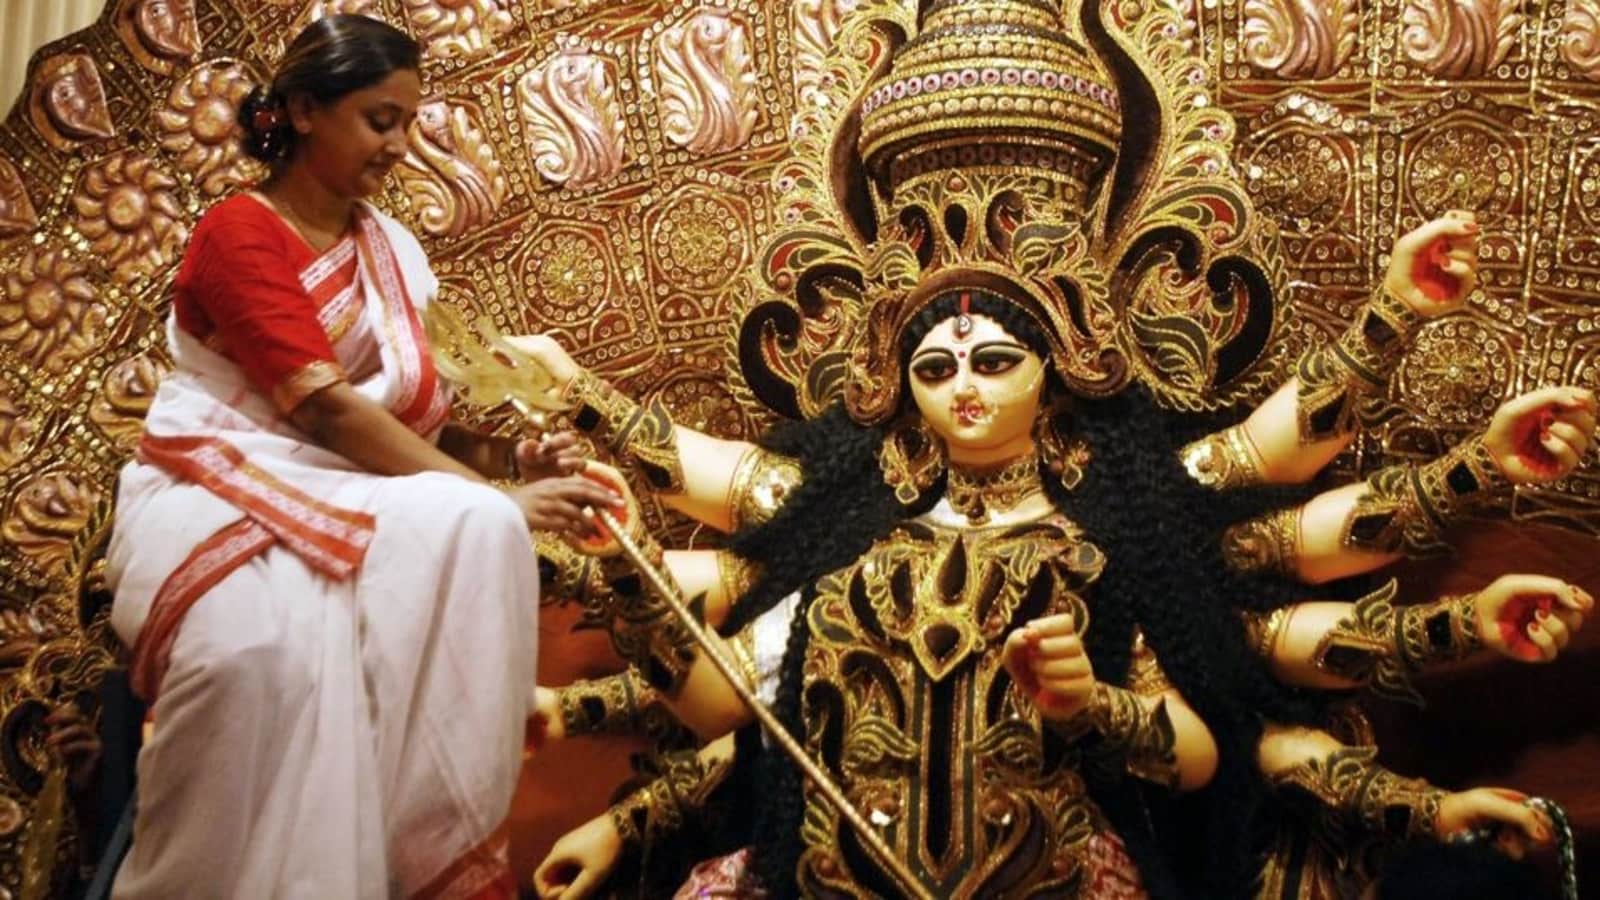 Durga Puja Festival in India